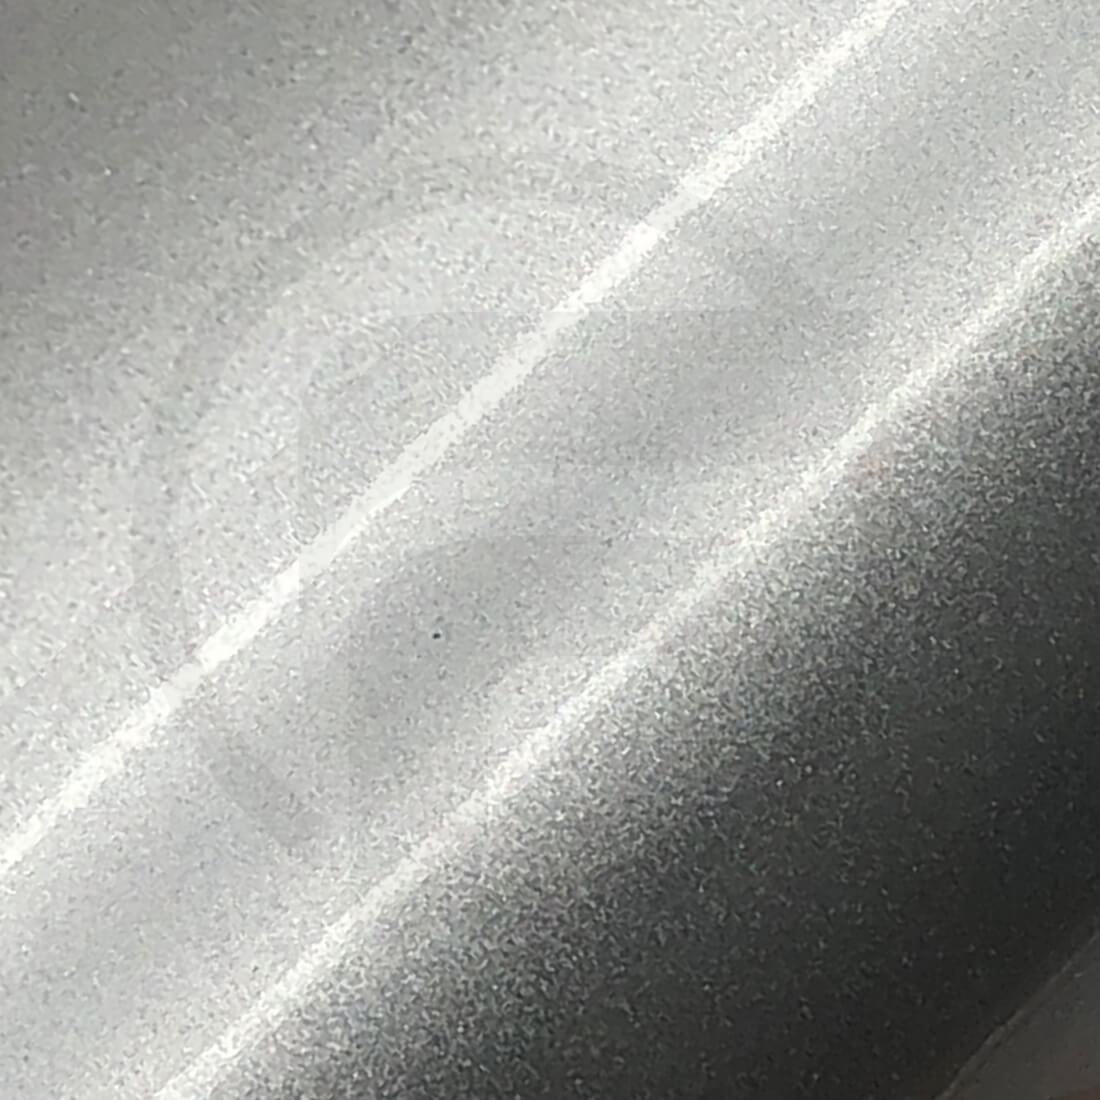 PP 100 Gloss: Weiße glänzende Folie mit permanenter grauer